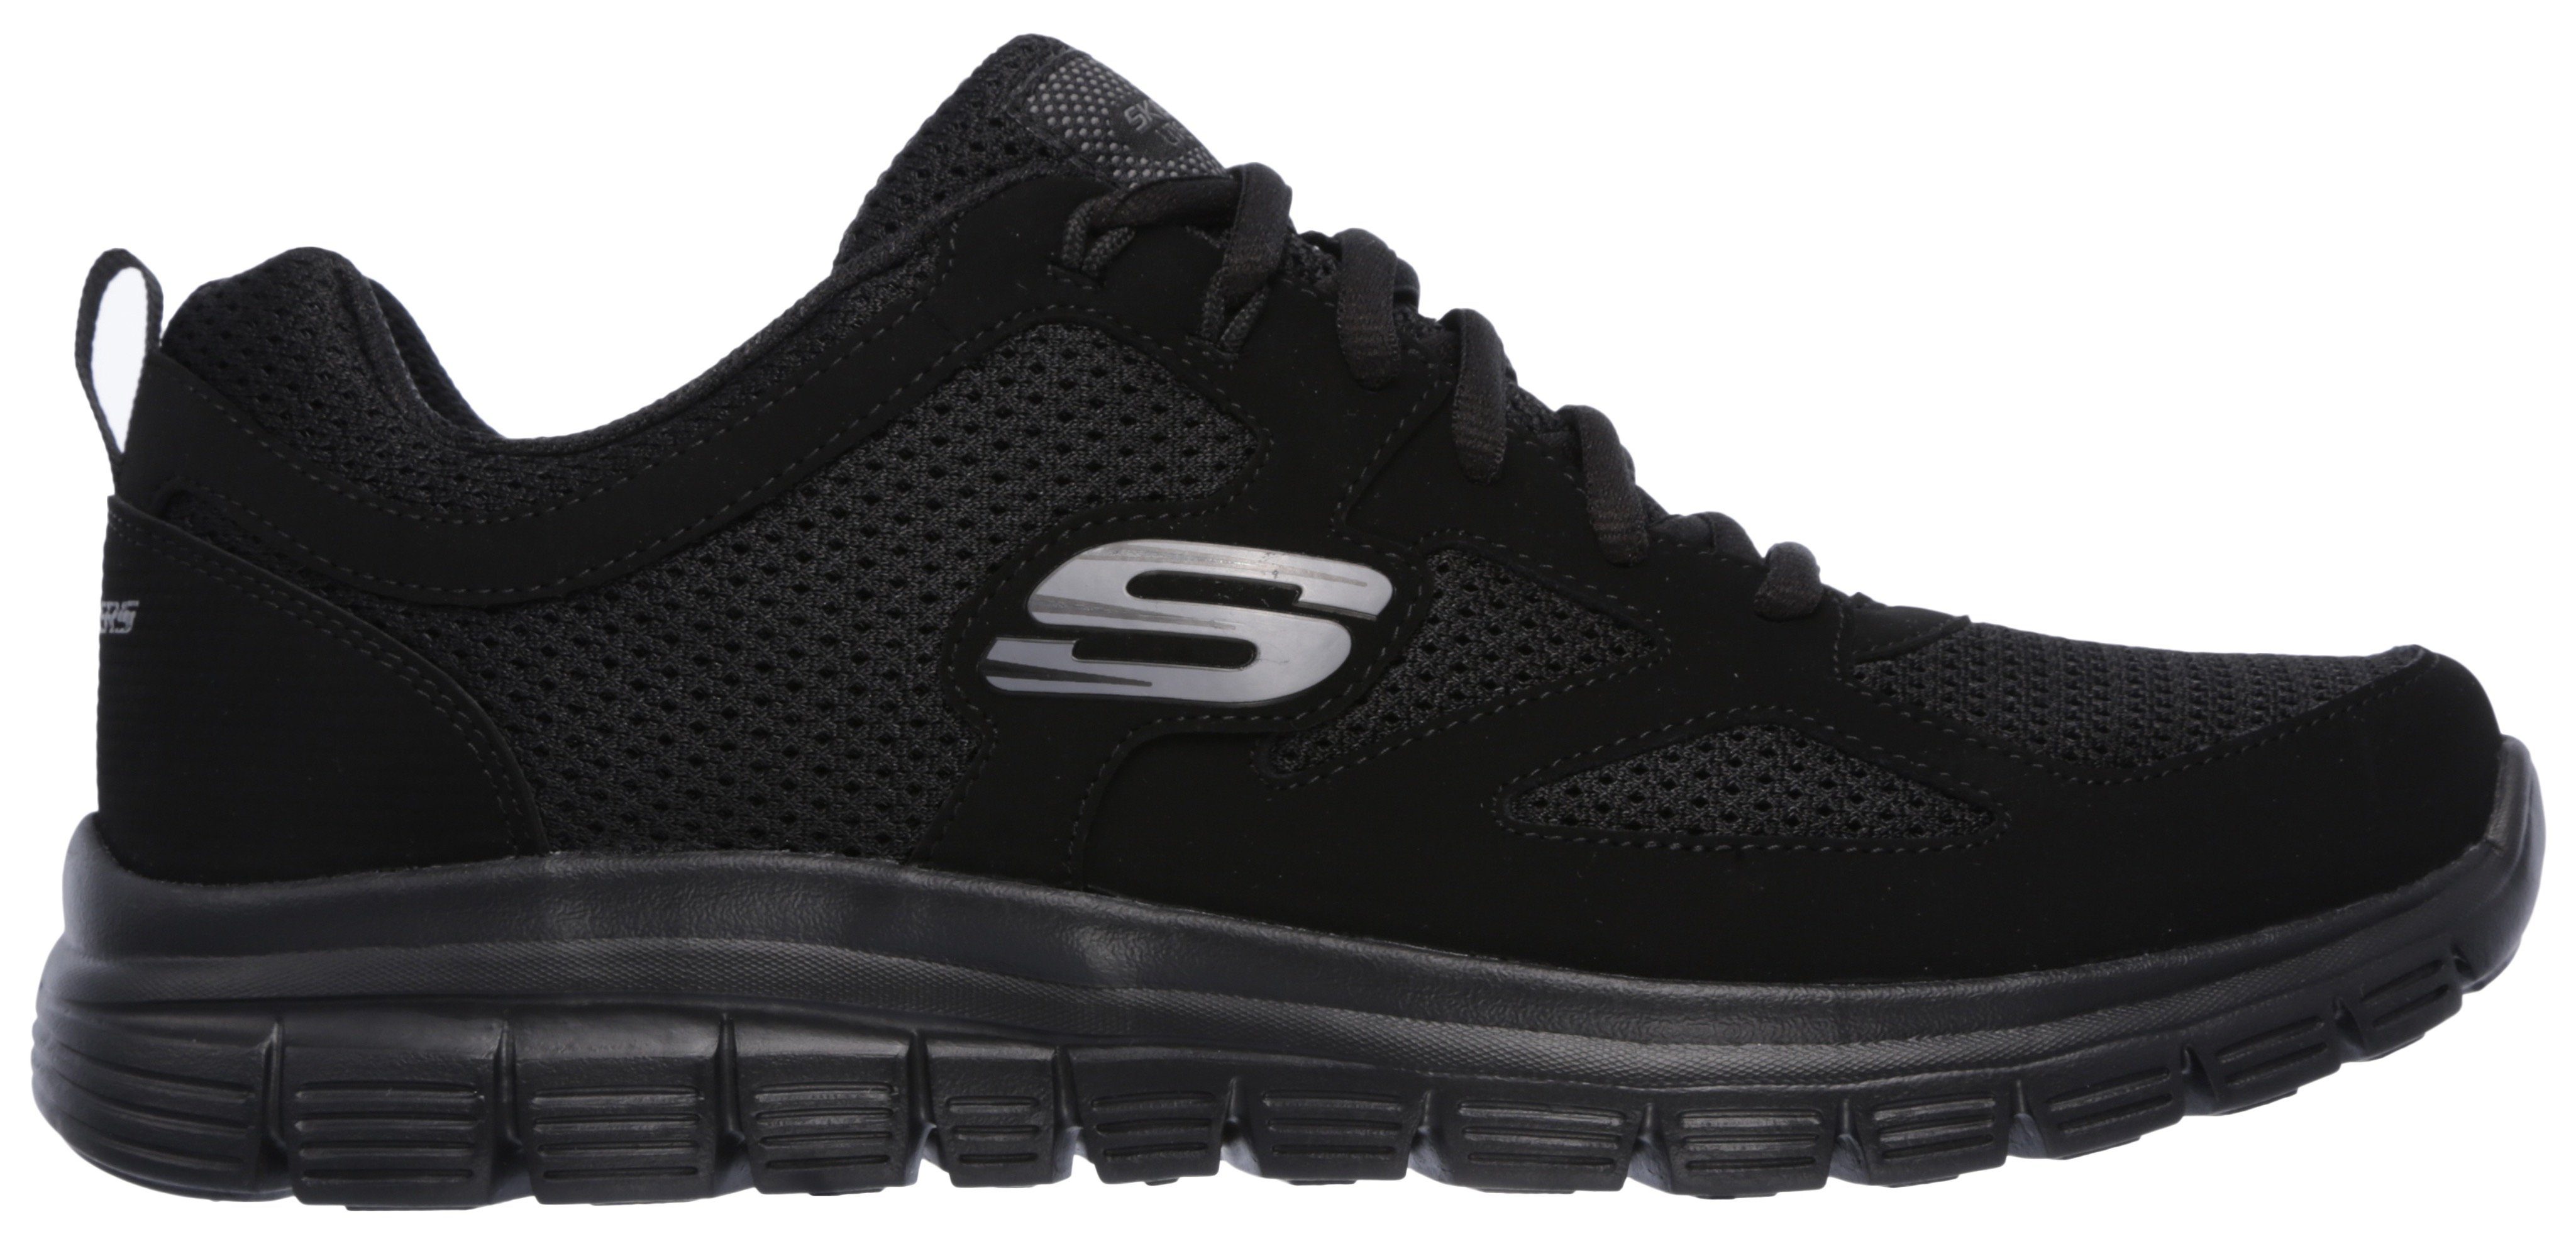 monochromen Sneaker Look BURNS-AGOURA Skechers im black/black